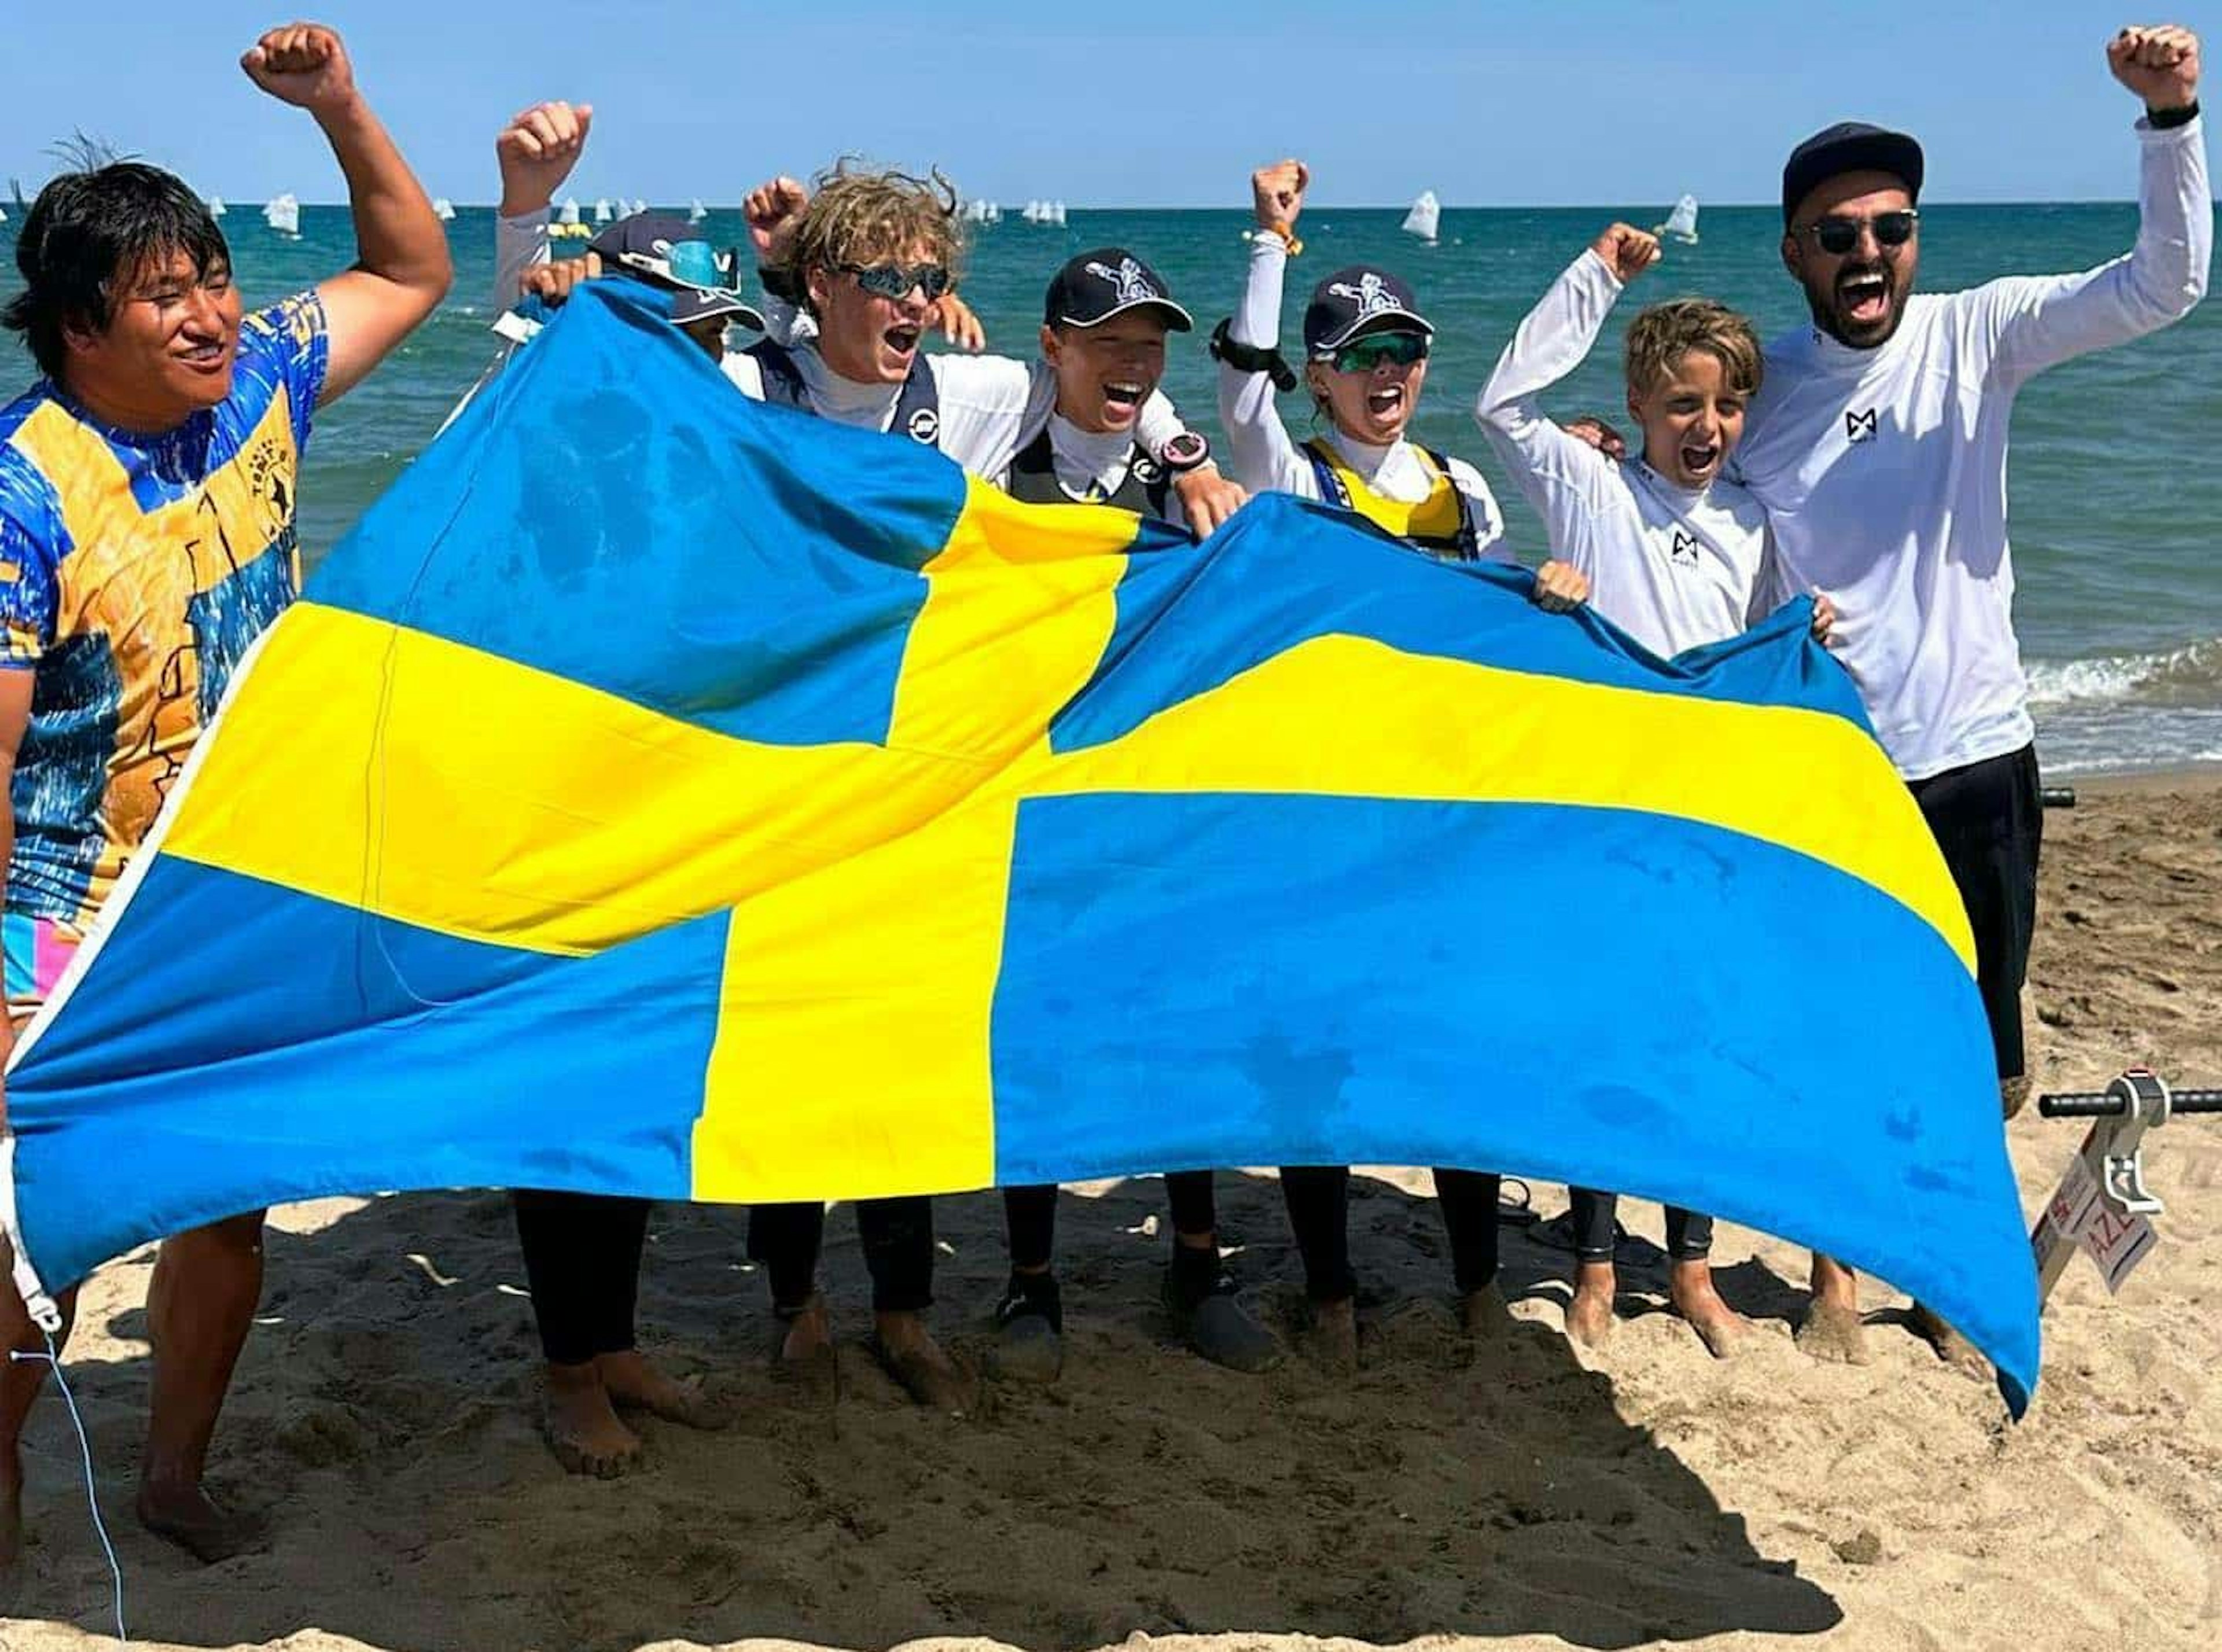 Optemist_VM_team_Sweden